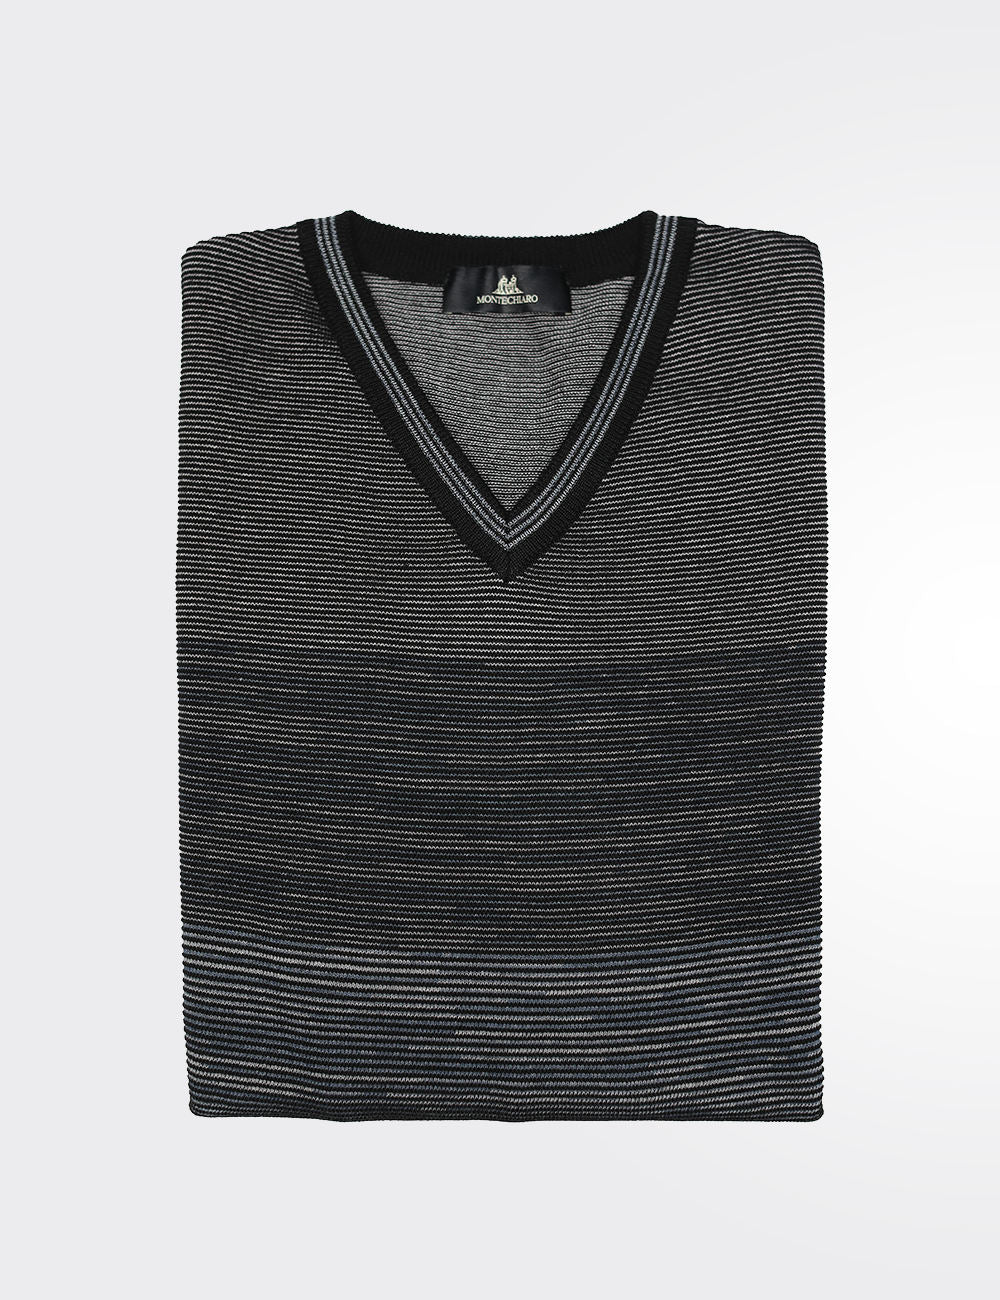 Italian Made V-neck pullover sweater for men